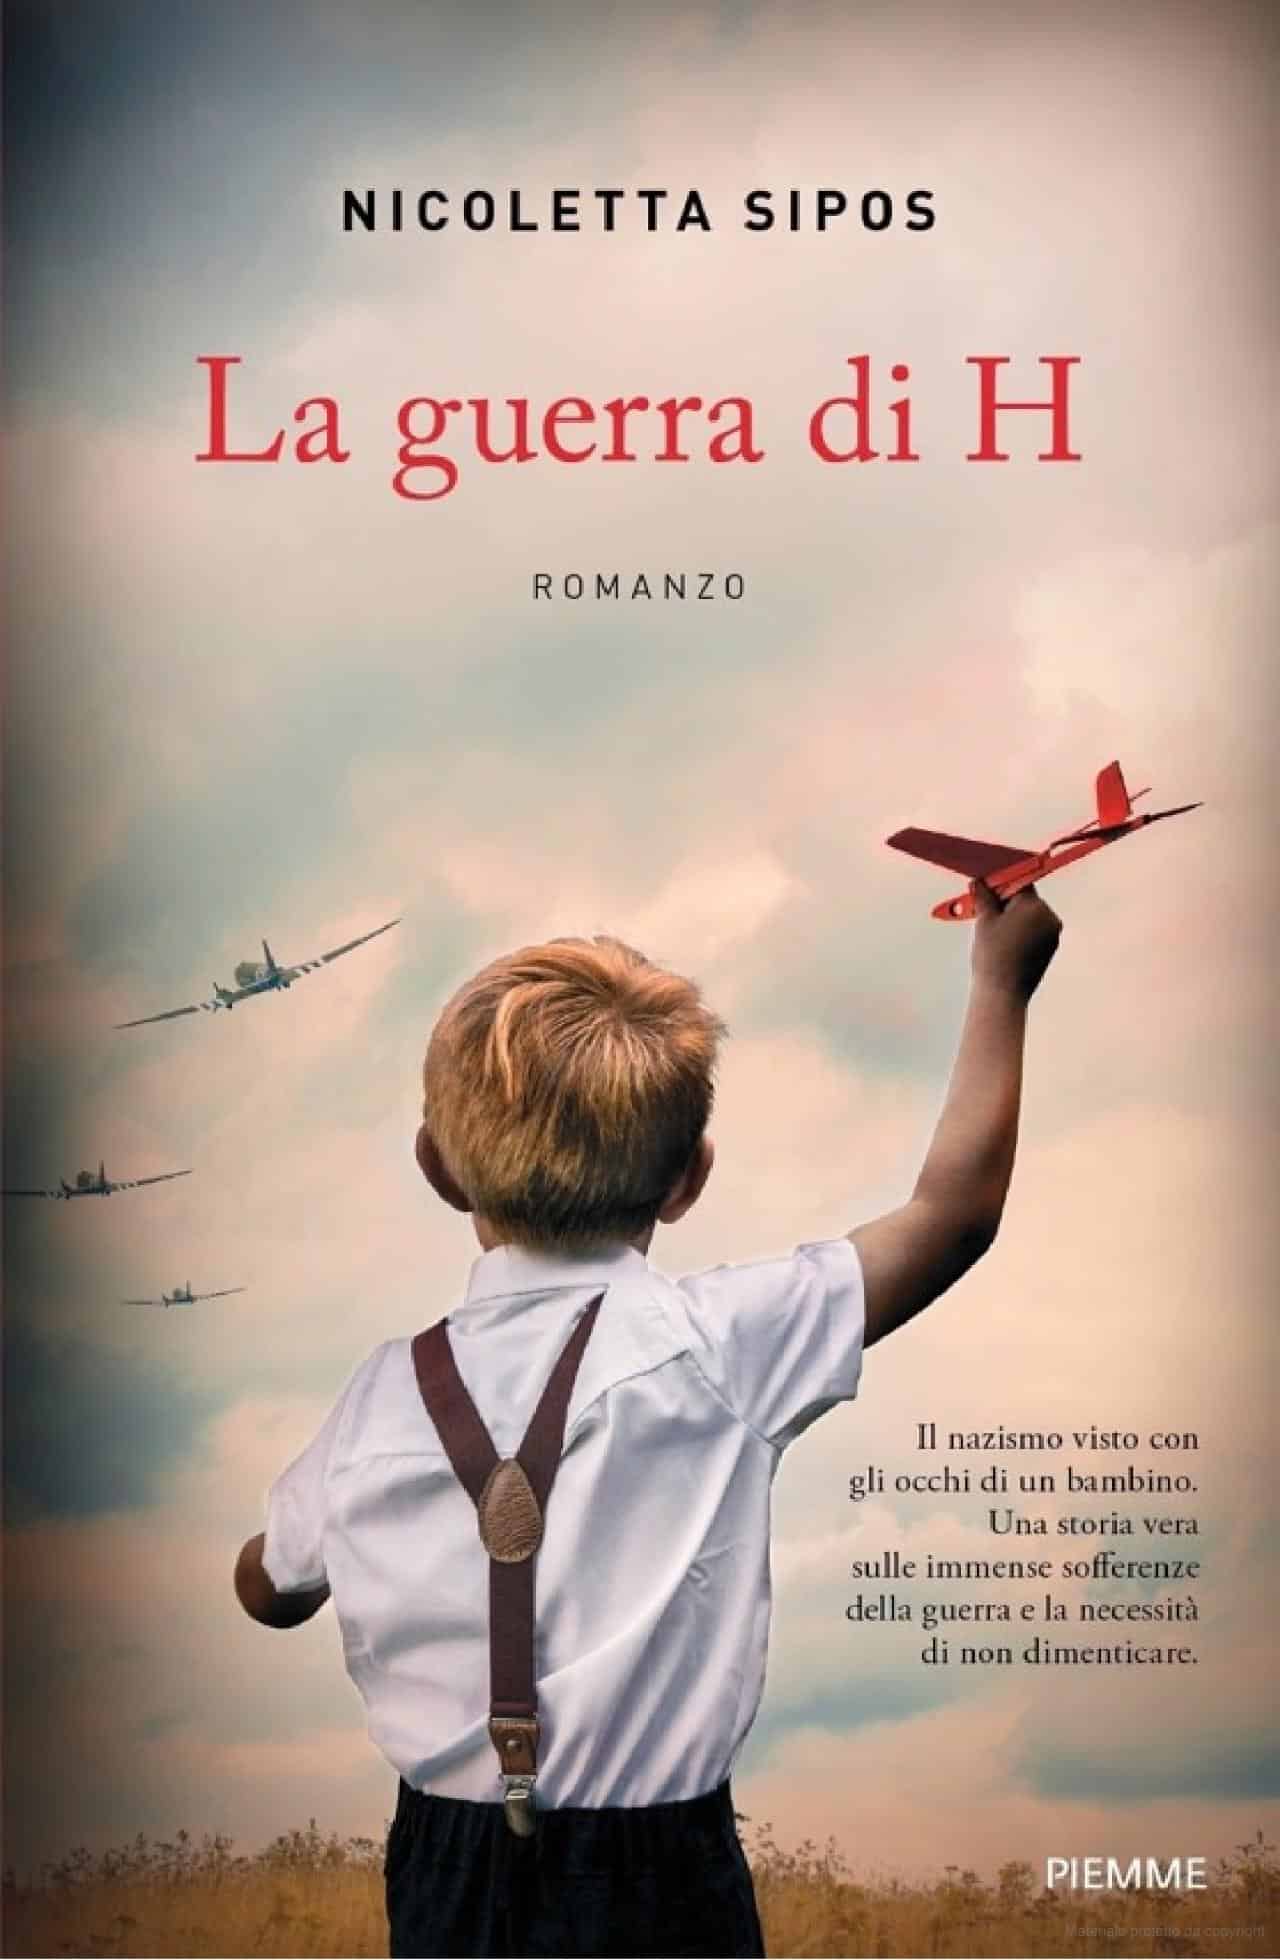 La cover del romanzo "La guerra di H"